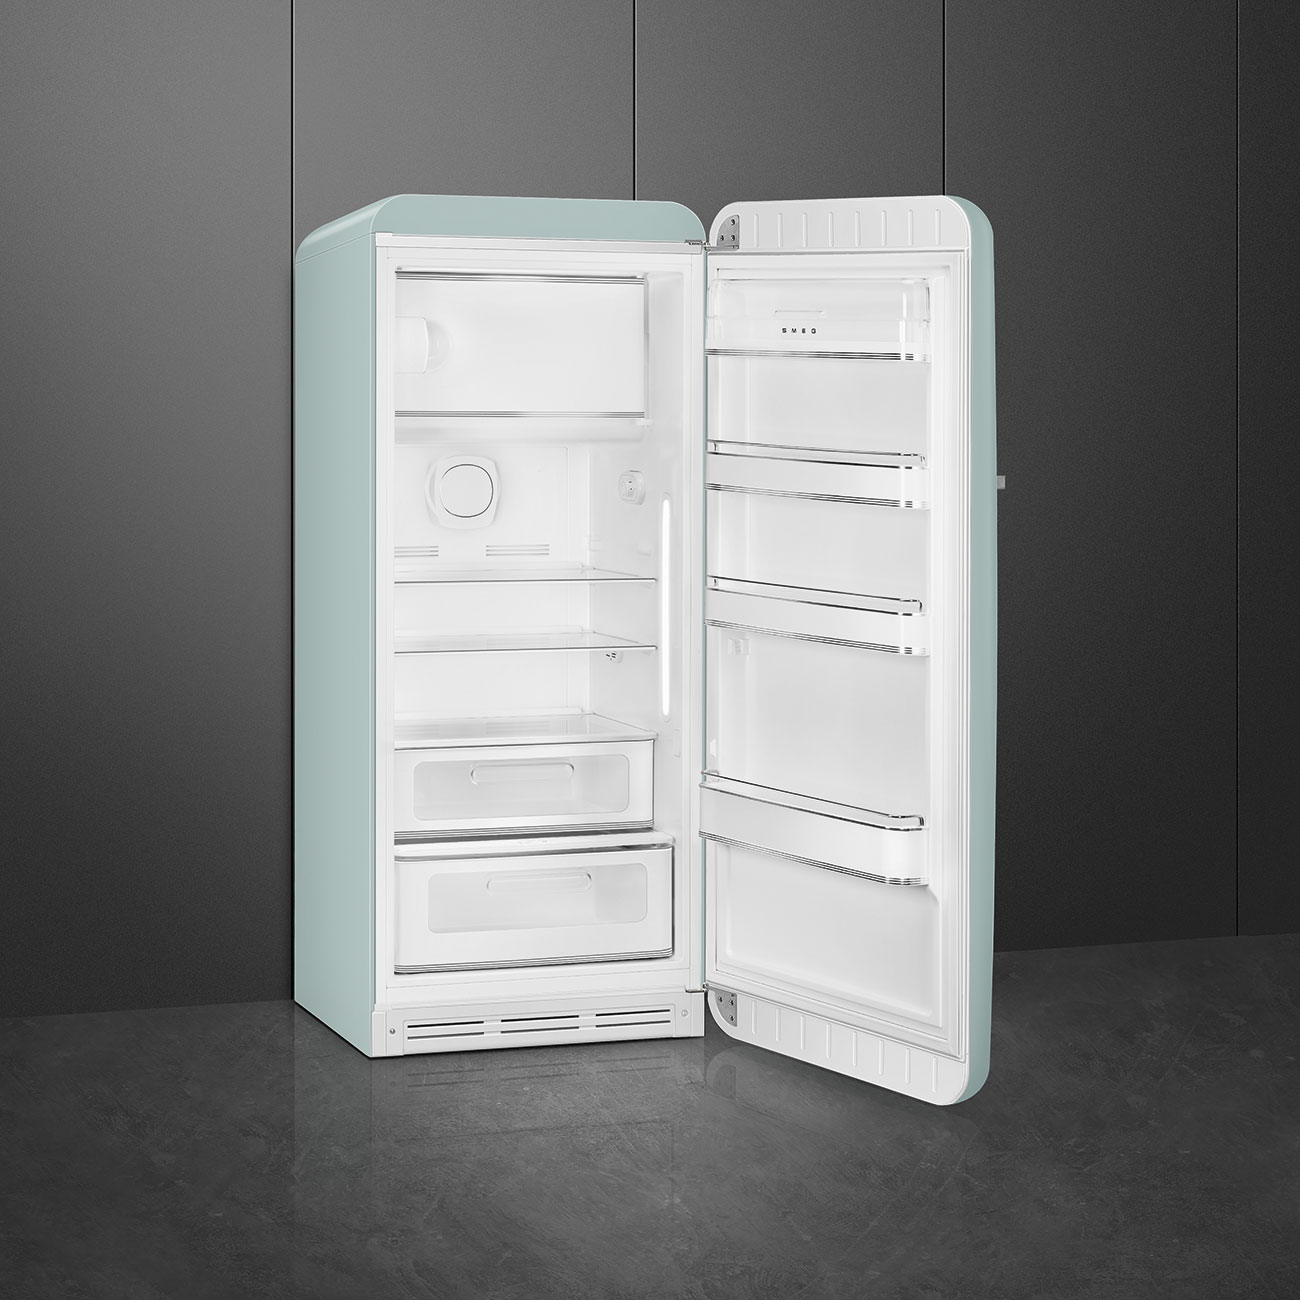 Sea Salt Green Retro-Kühlschränke von Smeg_2